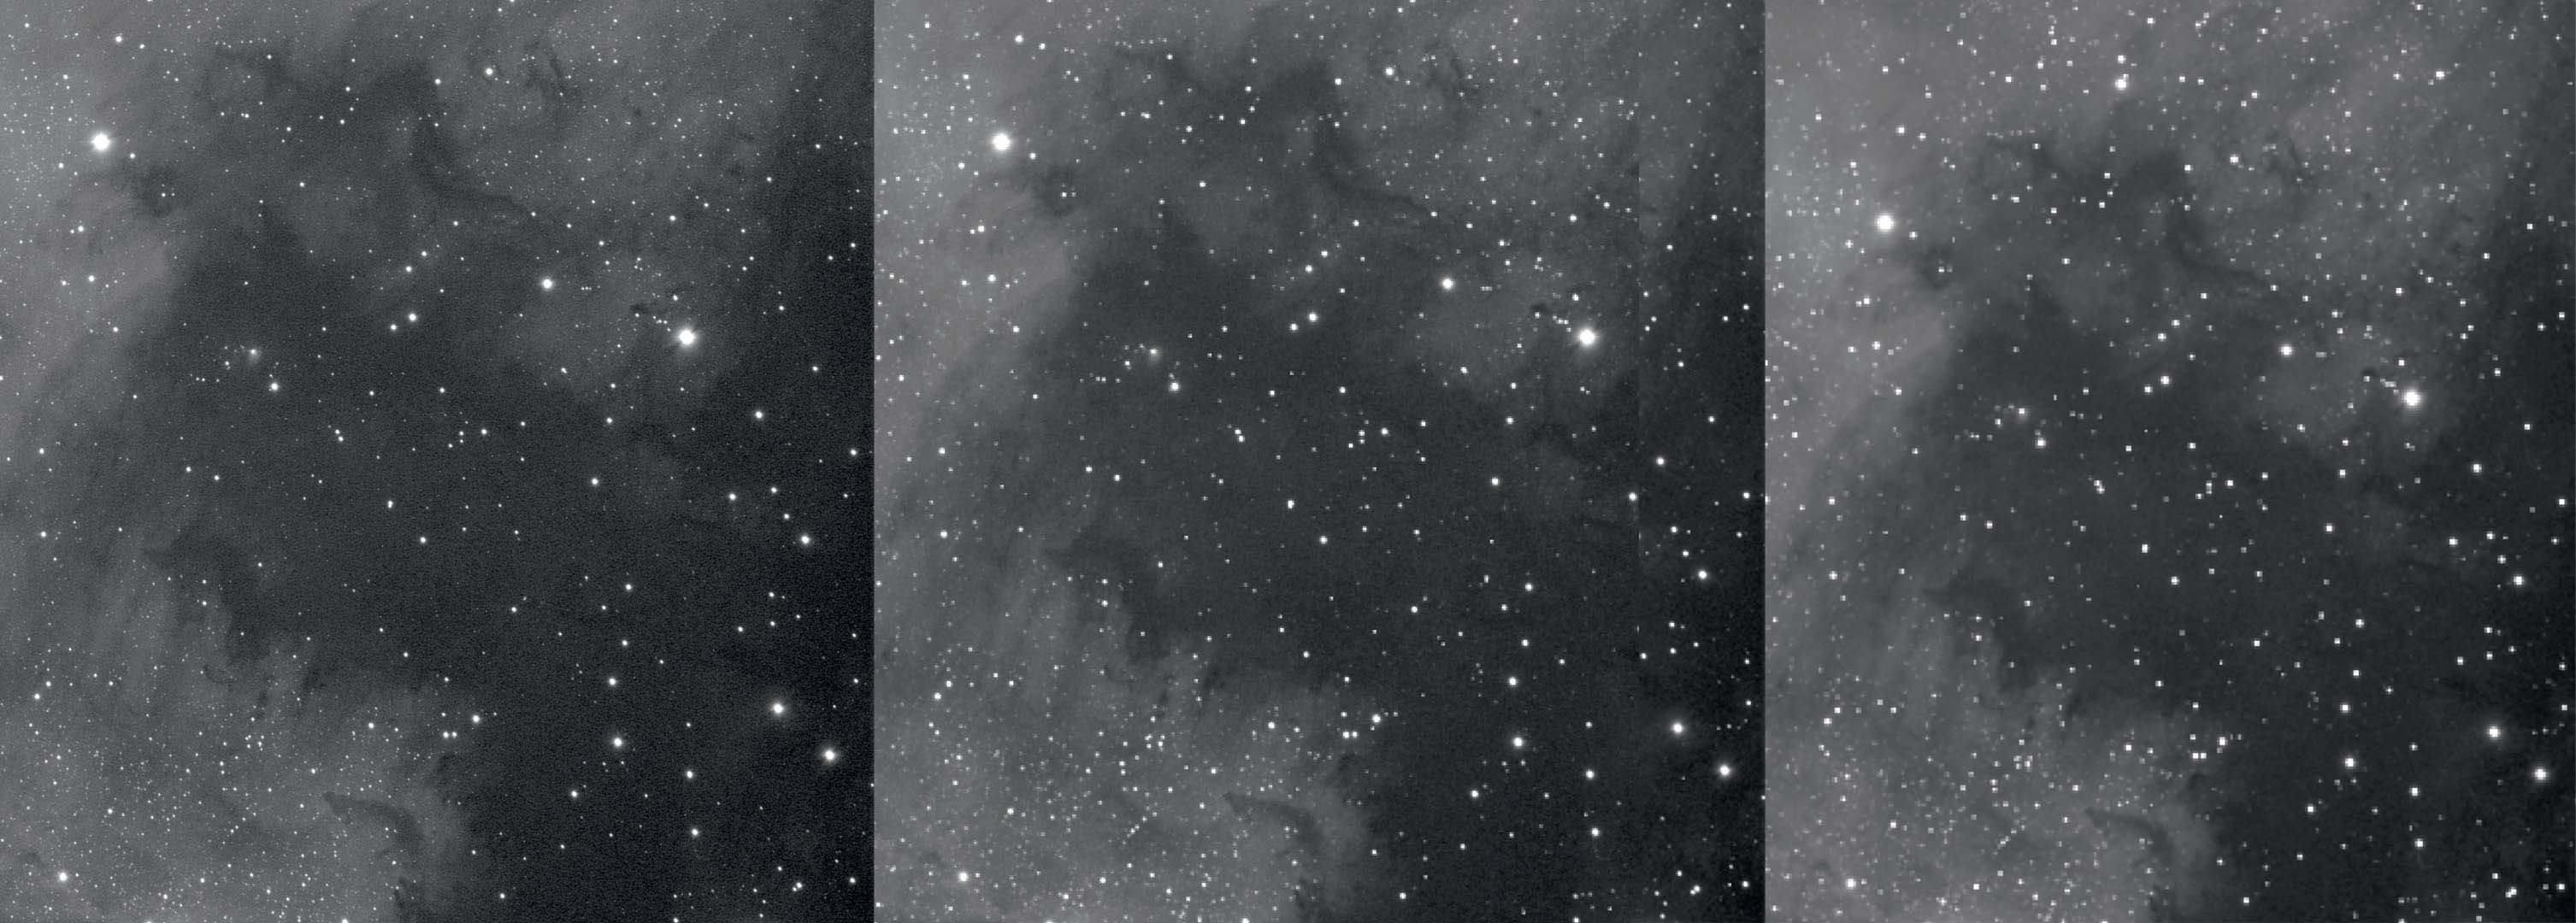 O secțiune a Nebuloasei America de Nord fără binning, cu binning 2x și cu binning 3x (de la stânga la dreapta). Binning reduce rezoluția și îmbunătățește raportul semnal-zgomot. M.Weigand